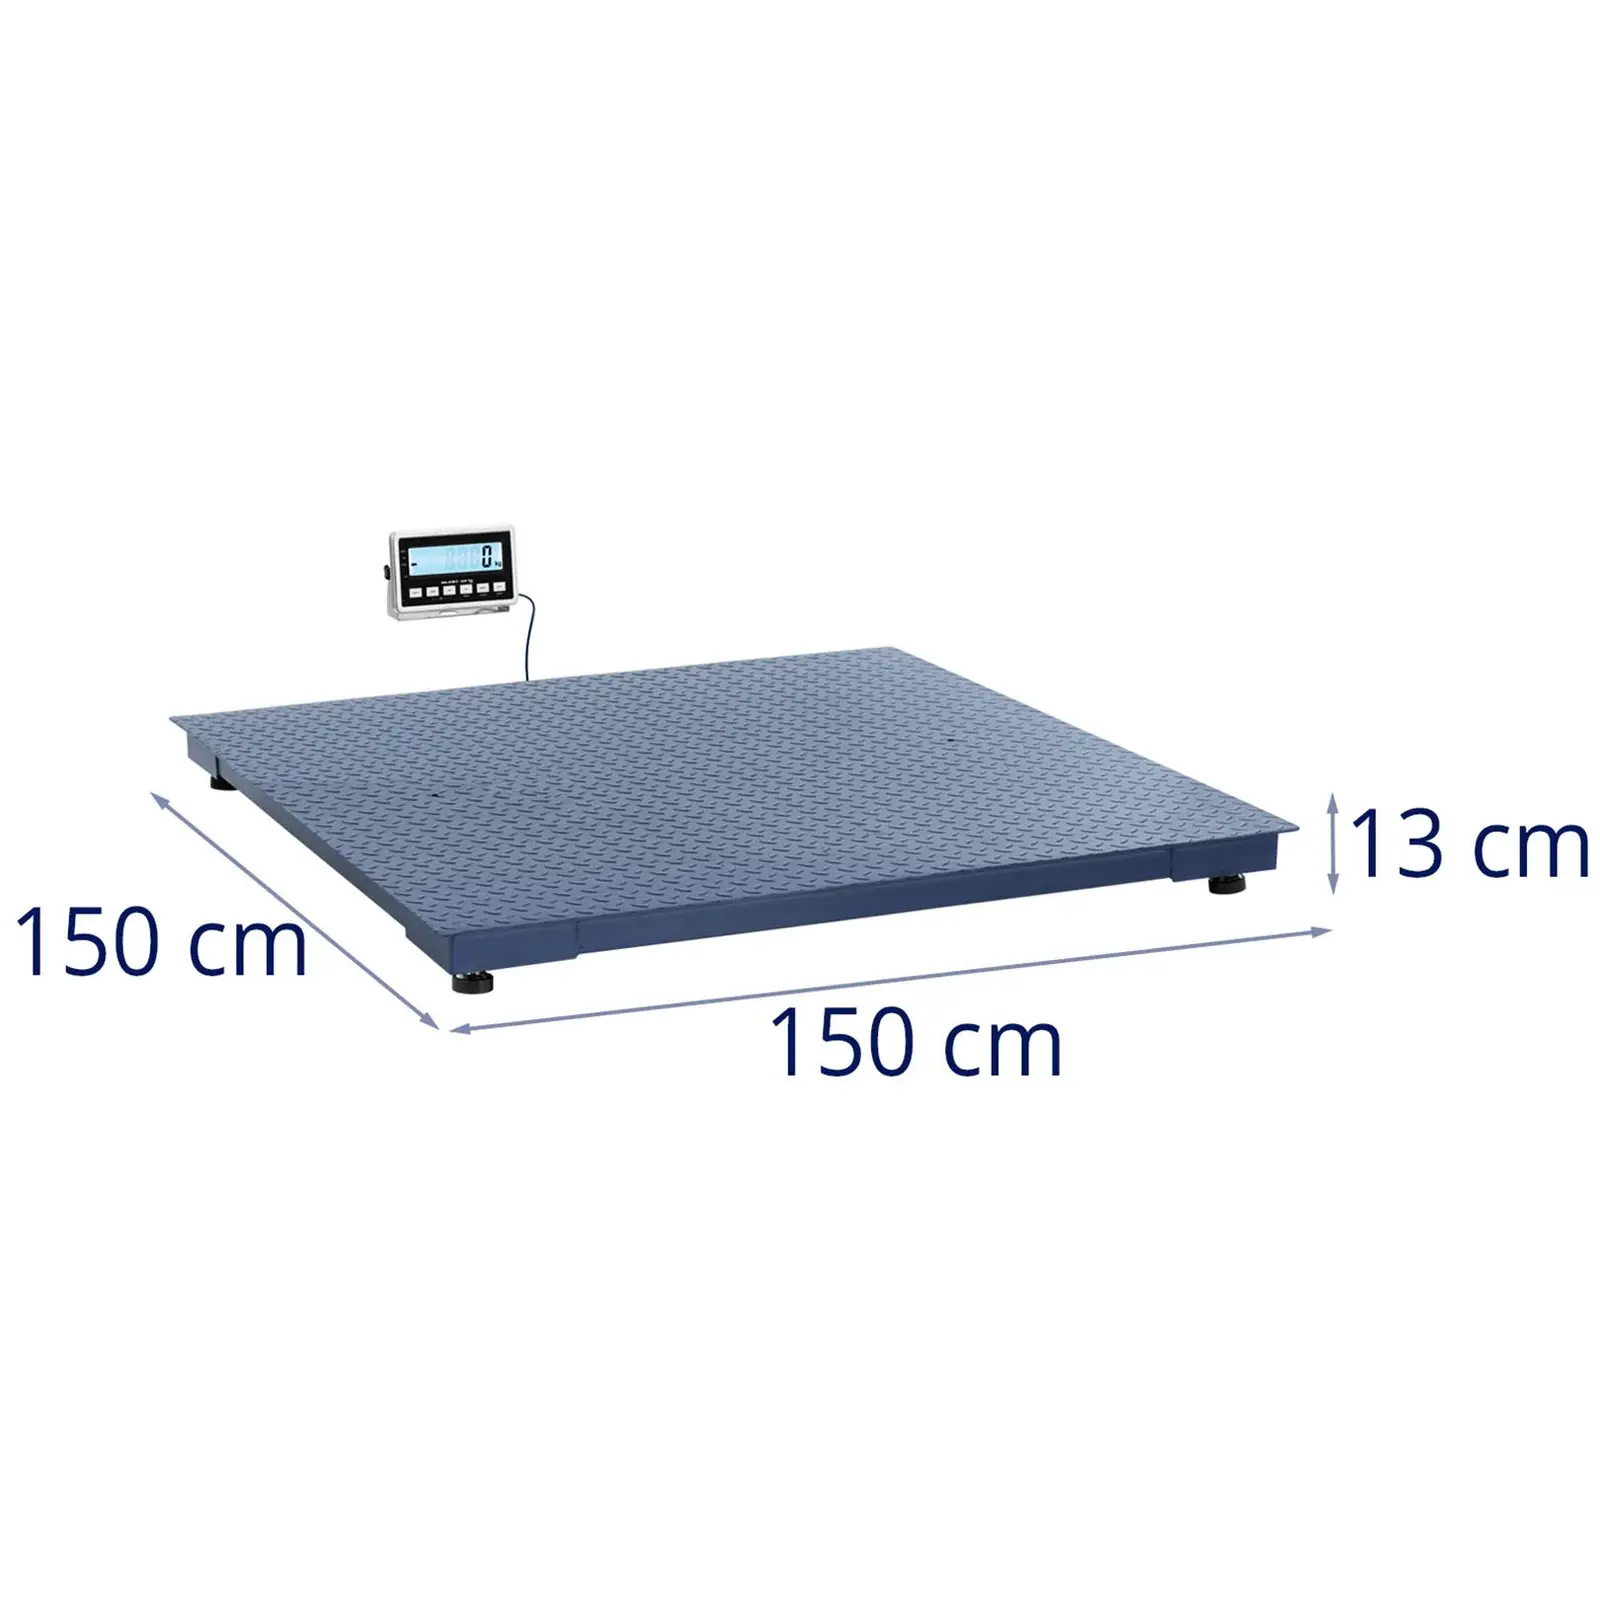 Balança de plataforma - 3000 kg / 1 kg - 1500 x 1500 mm - 2